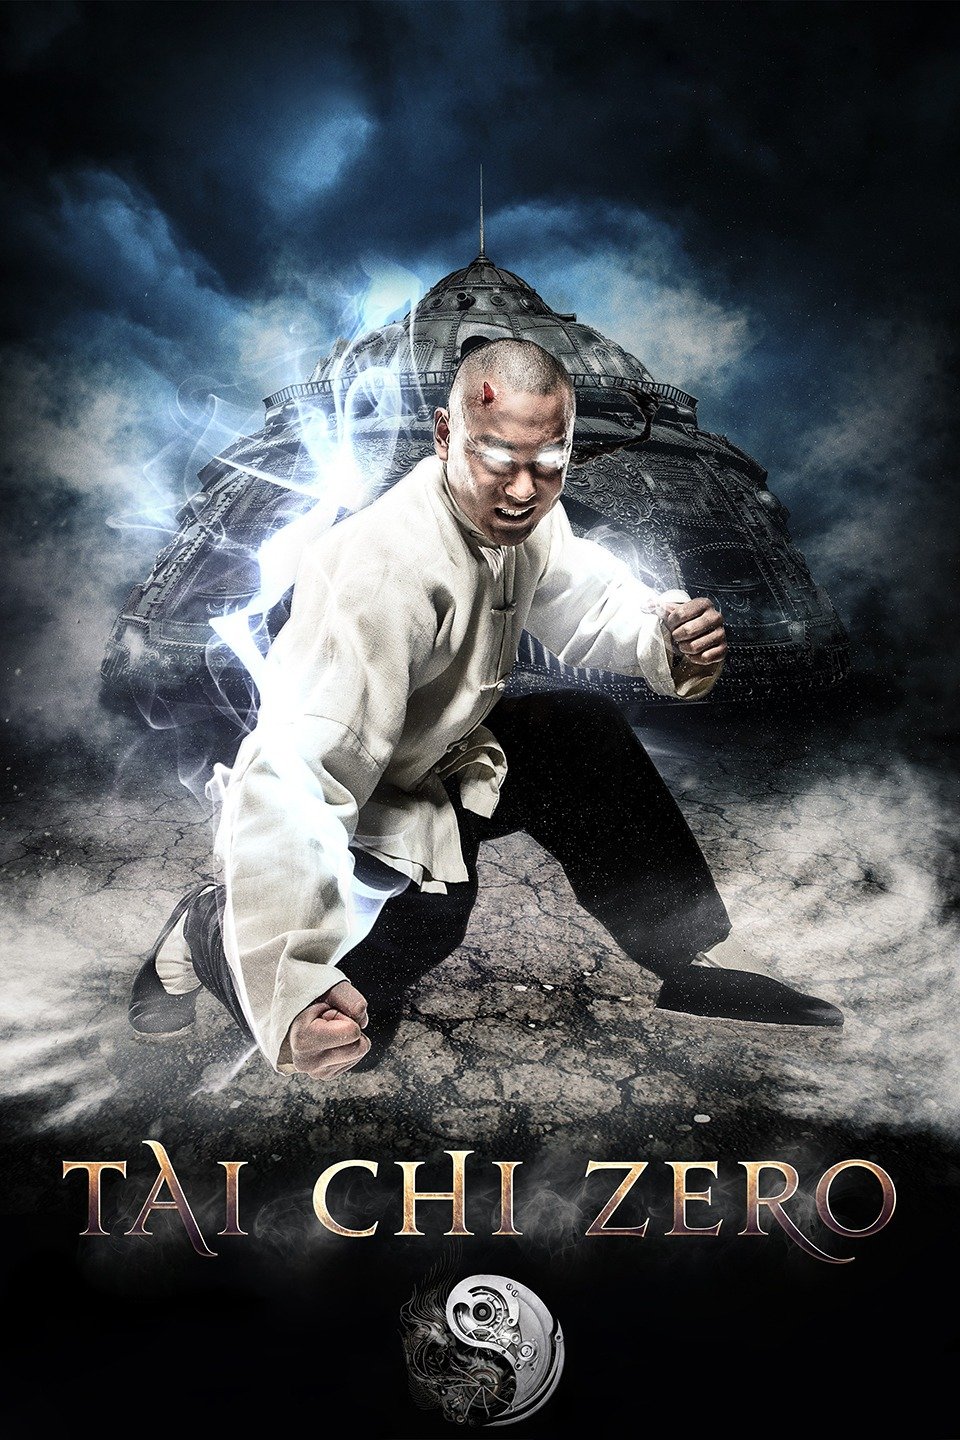 [MINI-HD] Tai Chi Zero (2012) ไทเก๊ก หมัดเล็กเหล็กตัน ภาค 1 [1080p] [พากย์ไทย 5.1 + จีน TrueHD 5.1] [ไม่มีบรรยาย] [เสียงไทย] [OPENLOAD]